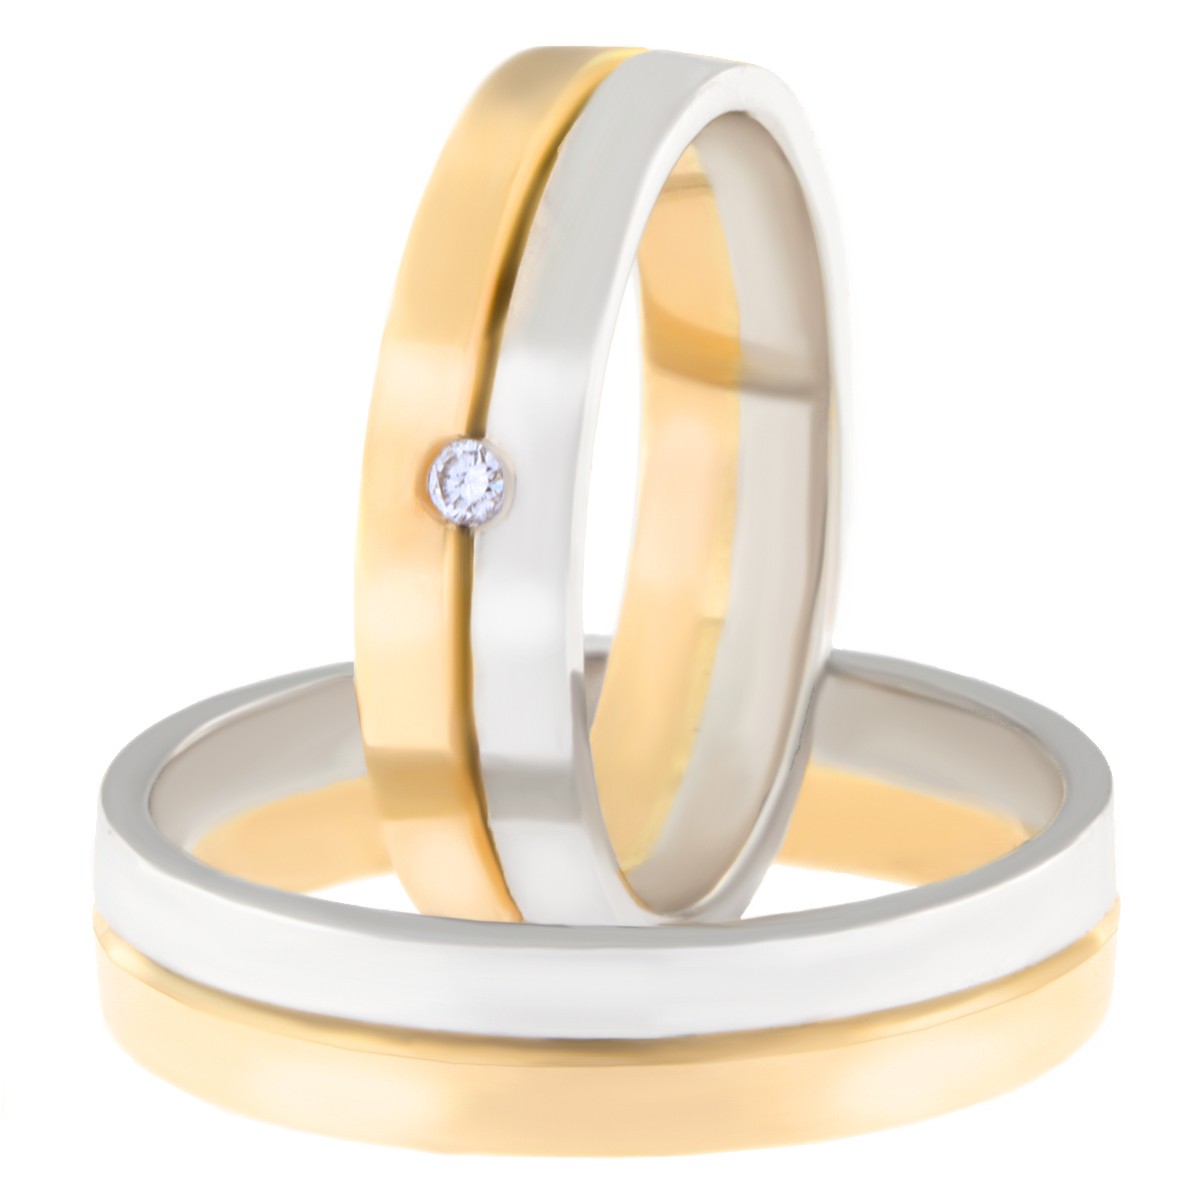 Kullast abielusõrmus teemantiga Kood: Rn0166-5-1/2vl-1/2kl-1k